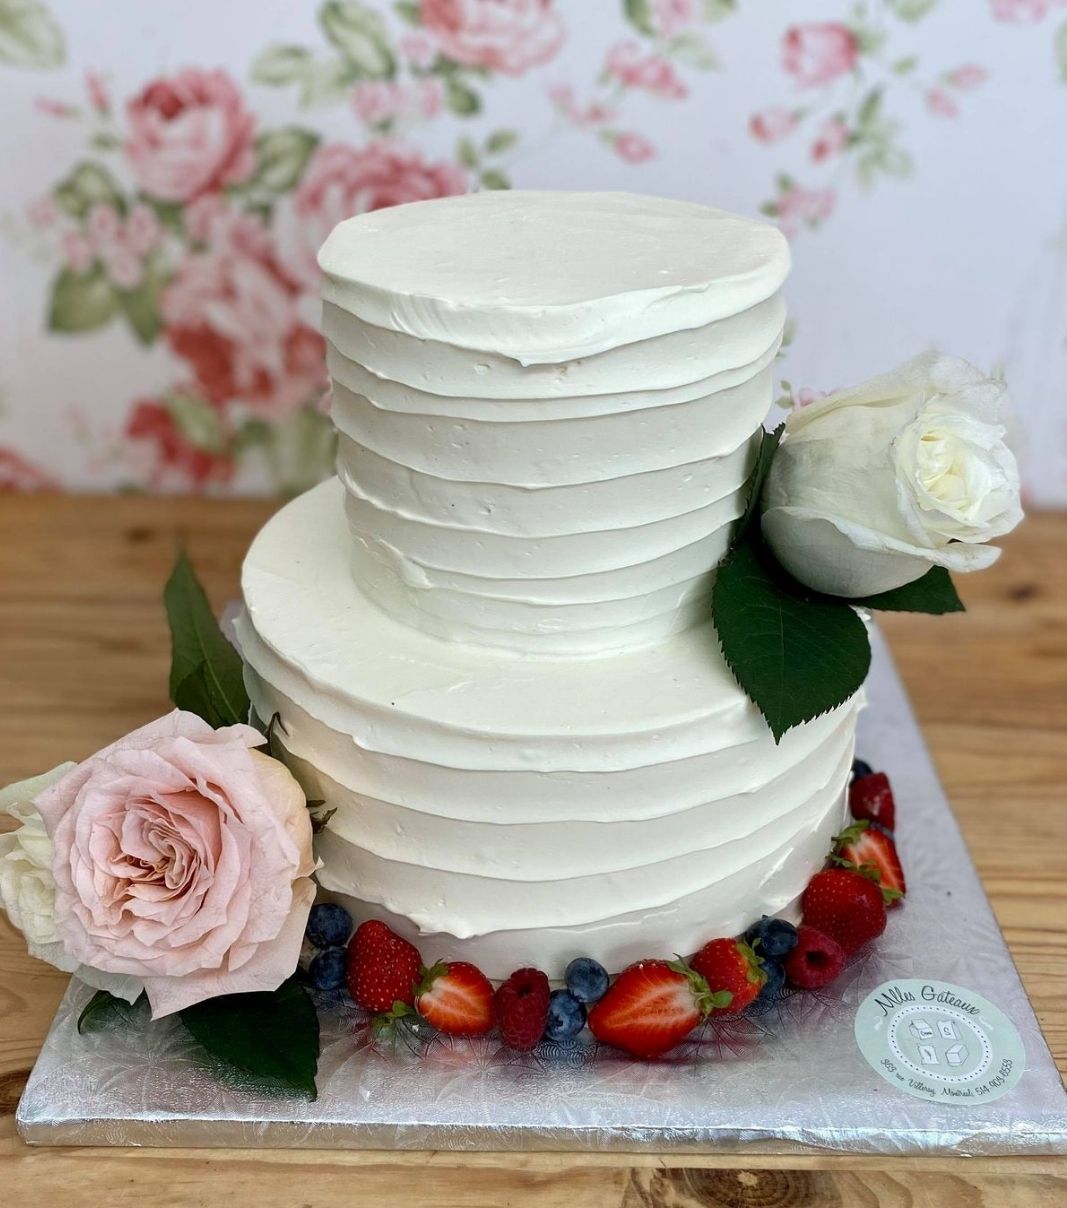 Gâteau de mariage: gâteau de 2 étages avec une couverture effet coup de spatule à la crème au beurre et décoré d'une bordure de fruits frais, de fleurs fraîches et de roses.